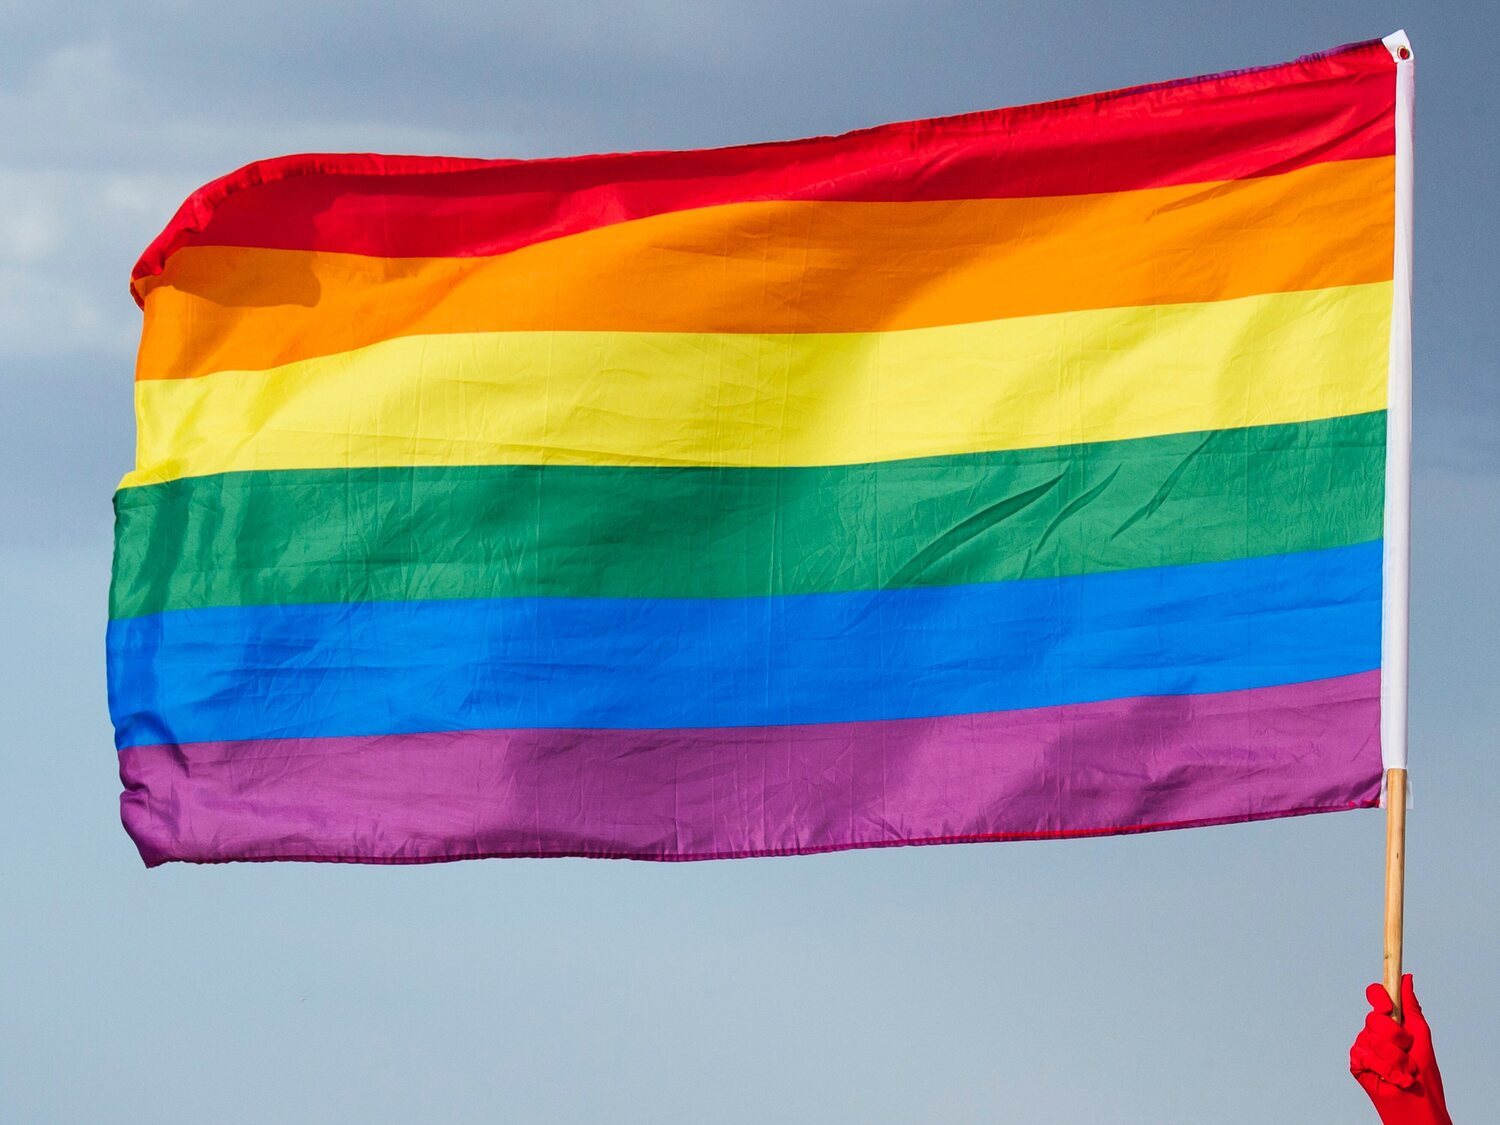 Denuncia una paliza de unos porteros de discoteca en Gran Canaria: "Por ser homosexual me ha pasado esto"